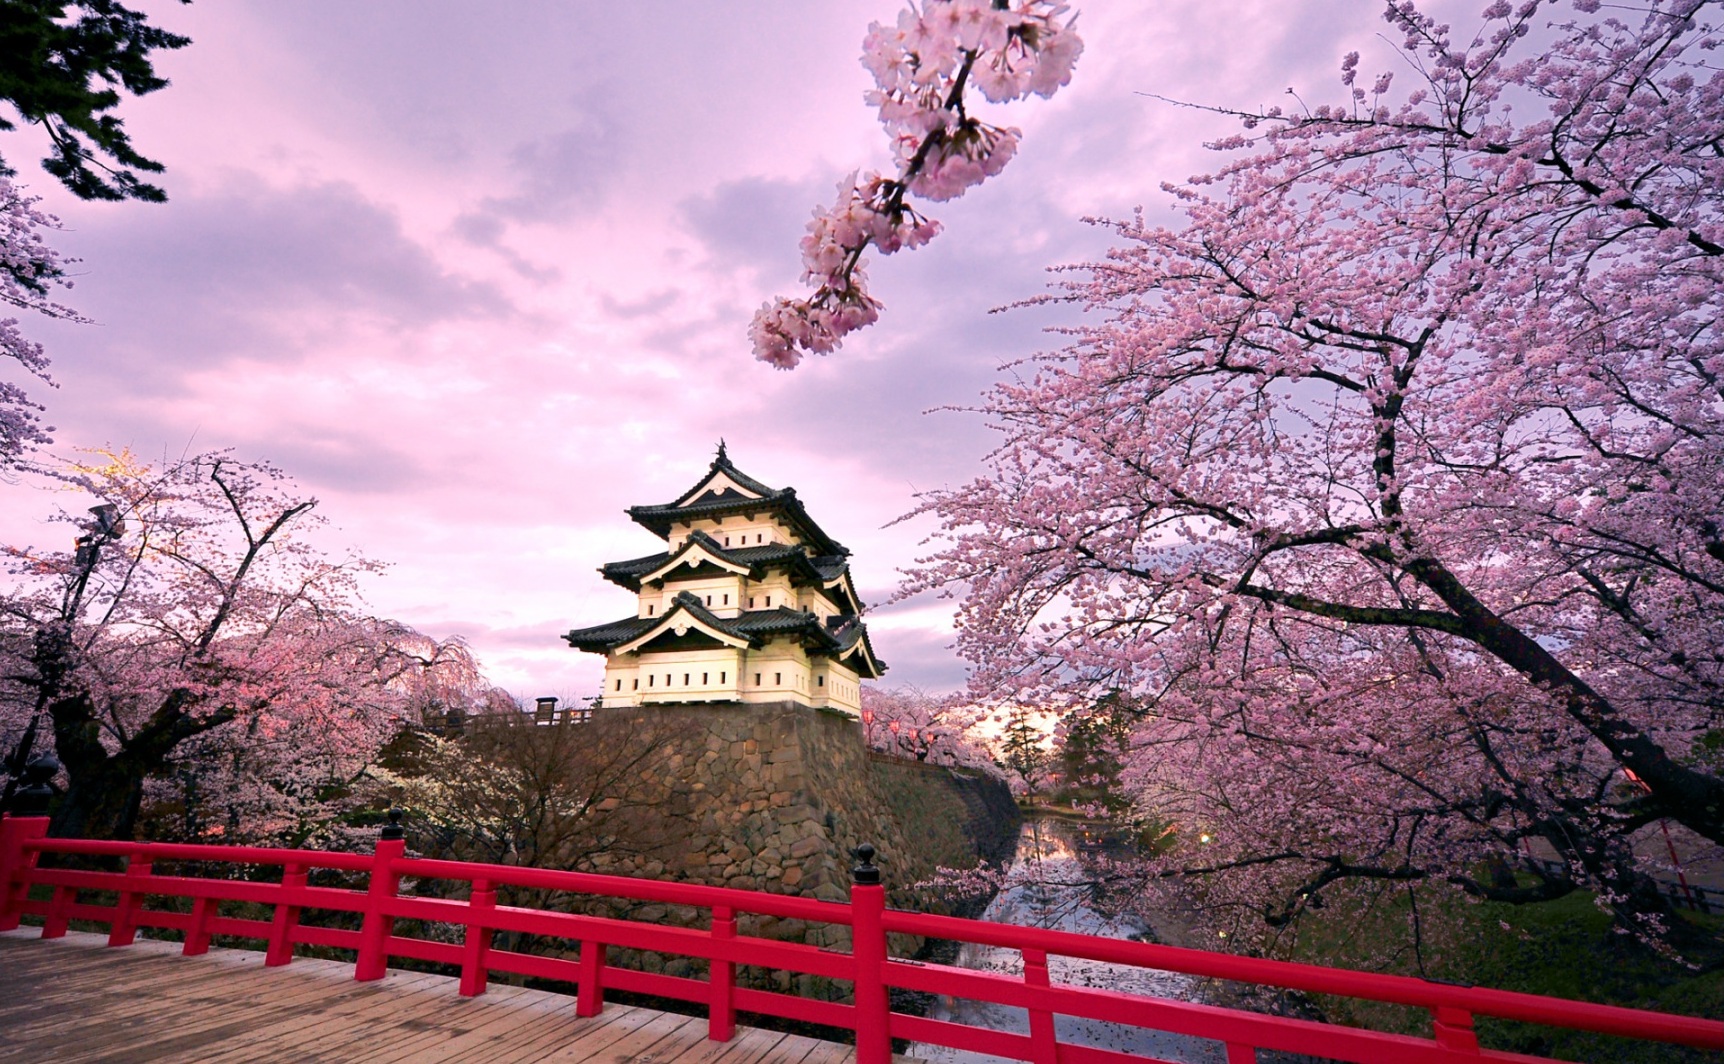 Ngỡ ngàng trước mùa hoa anh đào Nhật Bản đẹp đến nao lòng